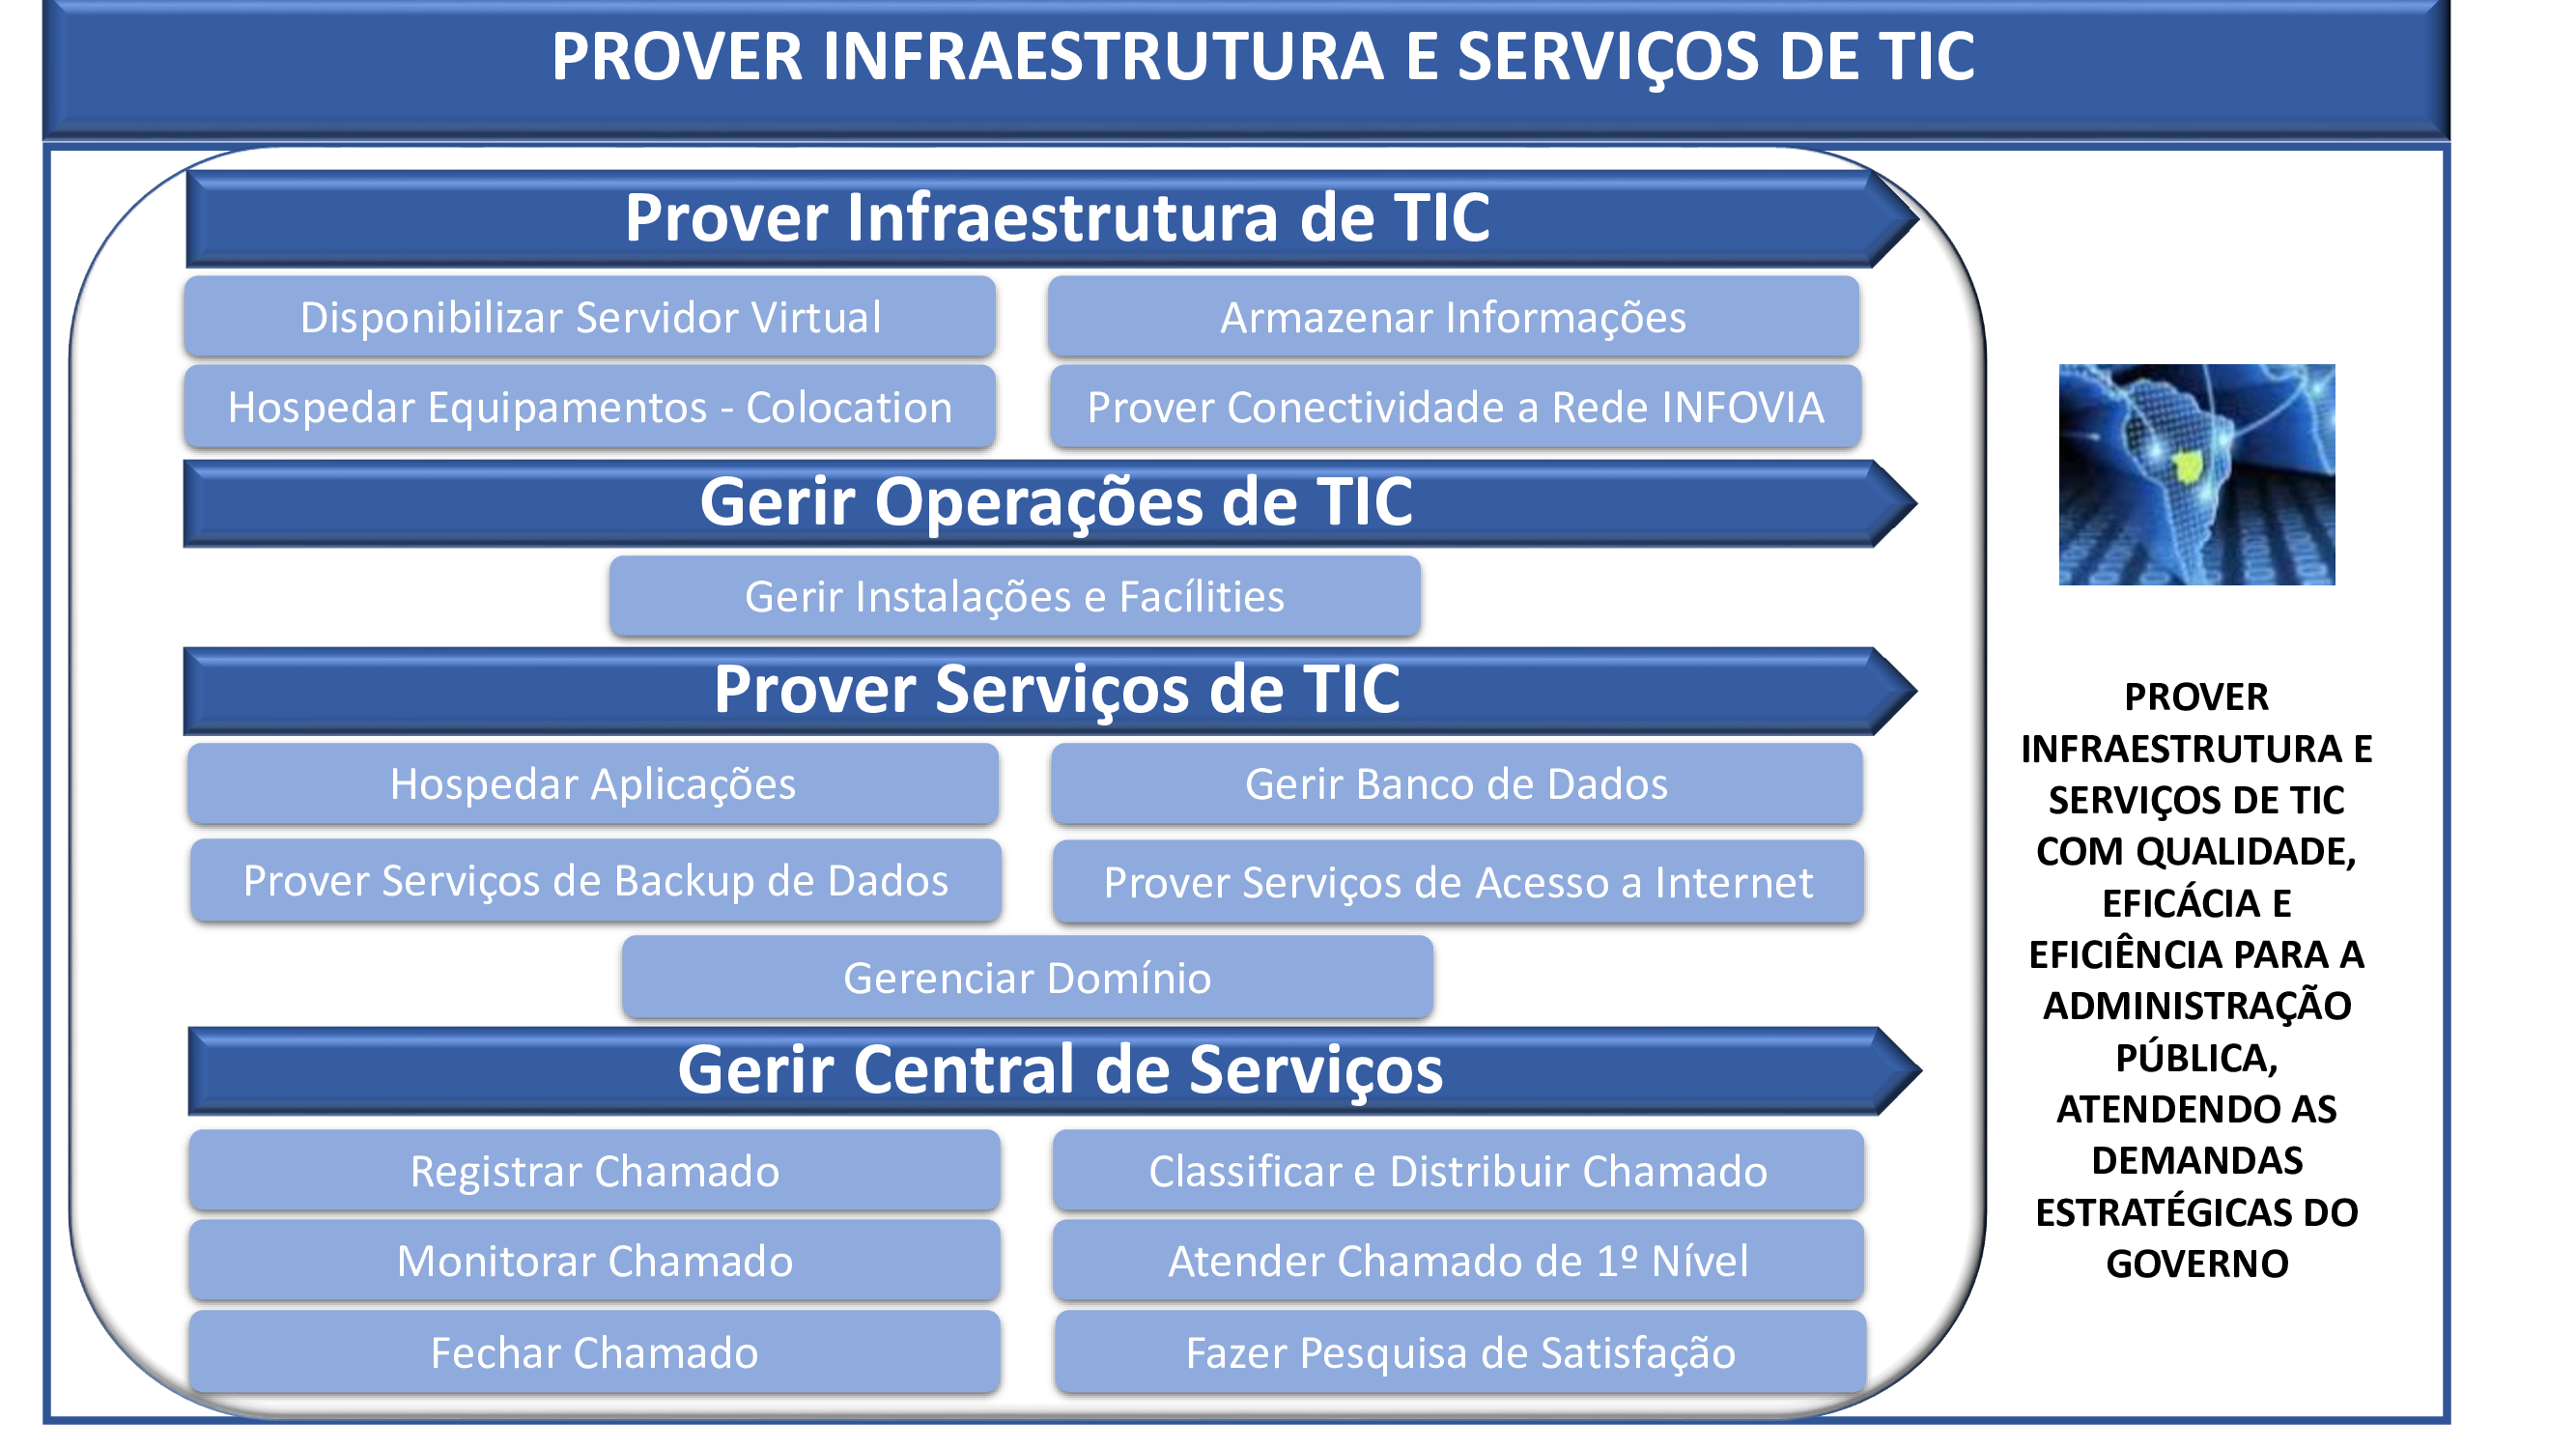 Sistema Prover Infraestrutura e Serviços de TIC